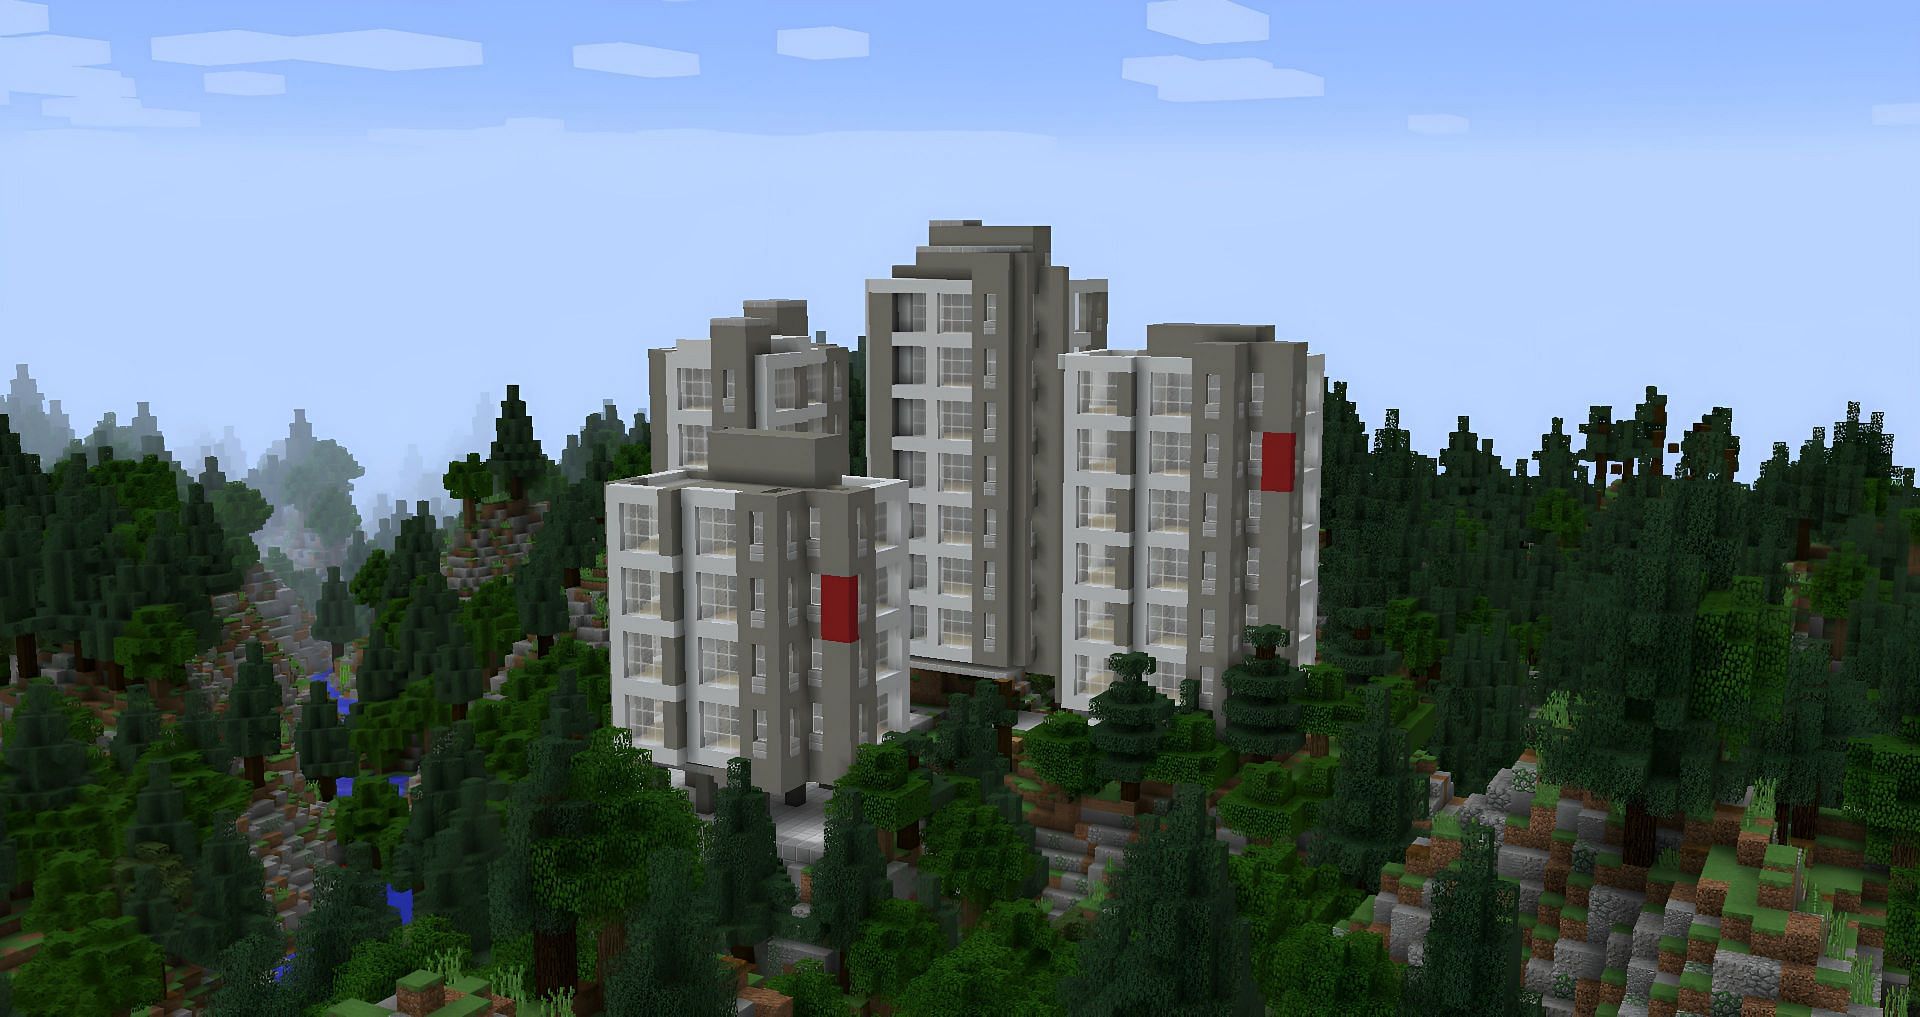 minecraft apartment